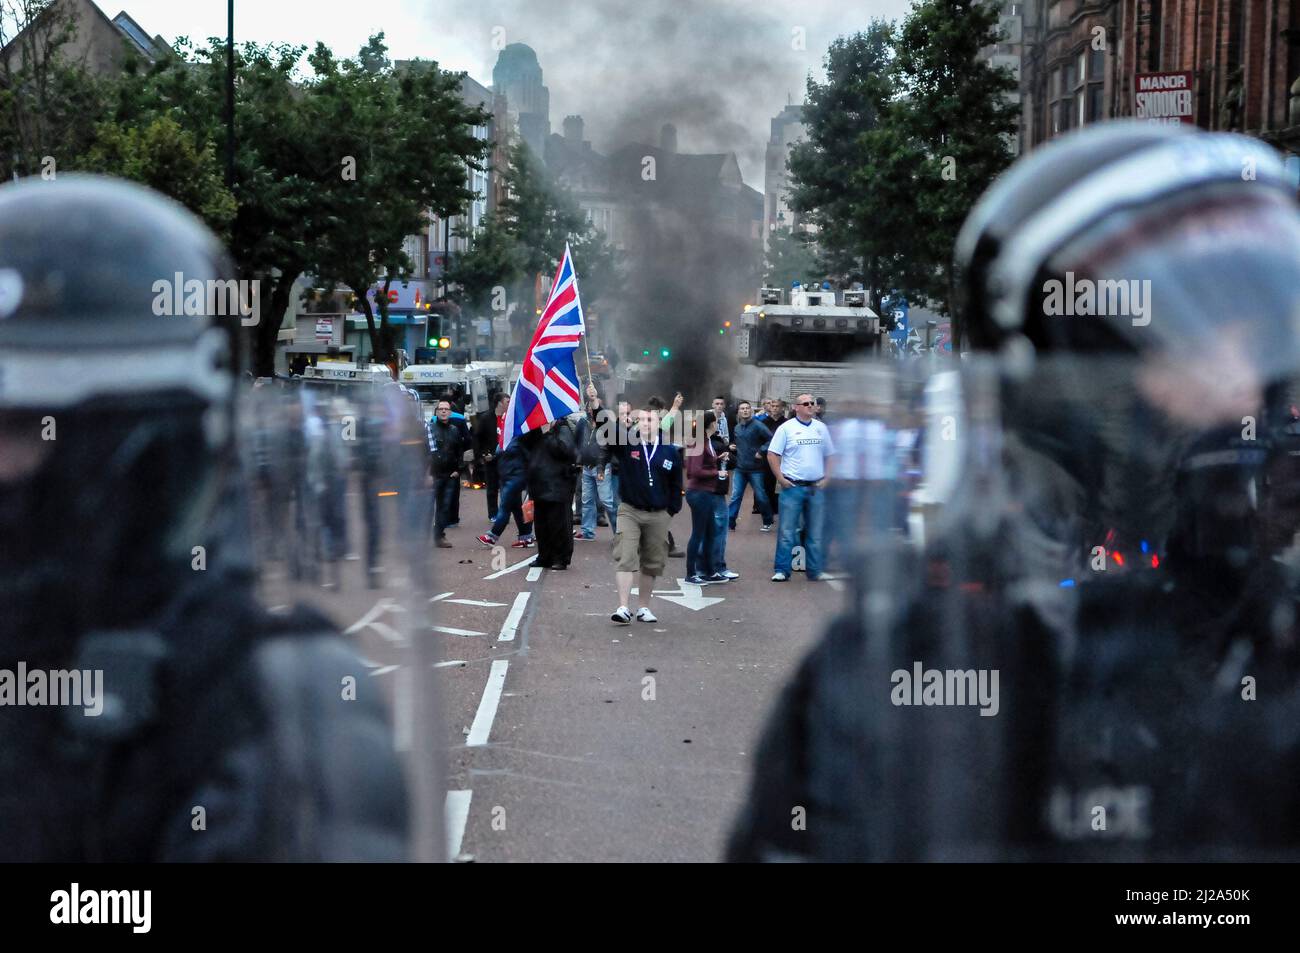 Belfast, Nordirland. 9. August 2013 - Funken eine Anti-Internierung-Parade von Republikanern Unruhen durch Proteste Loyalisten in Belfast Stockfoto